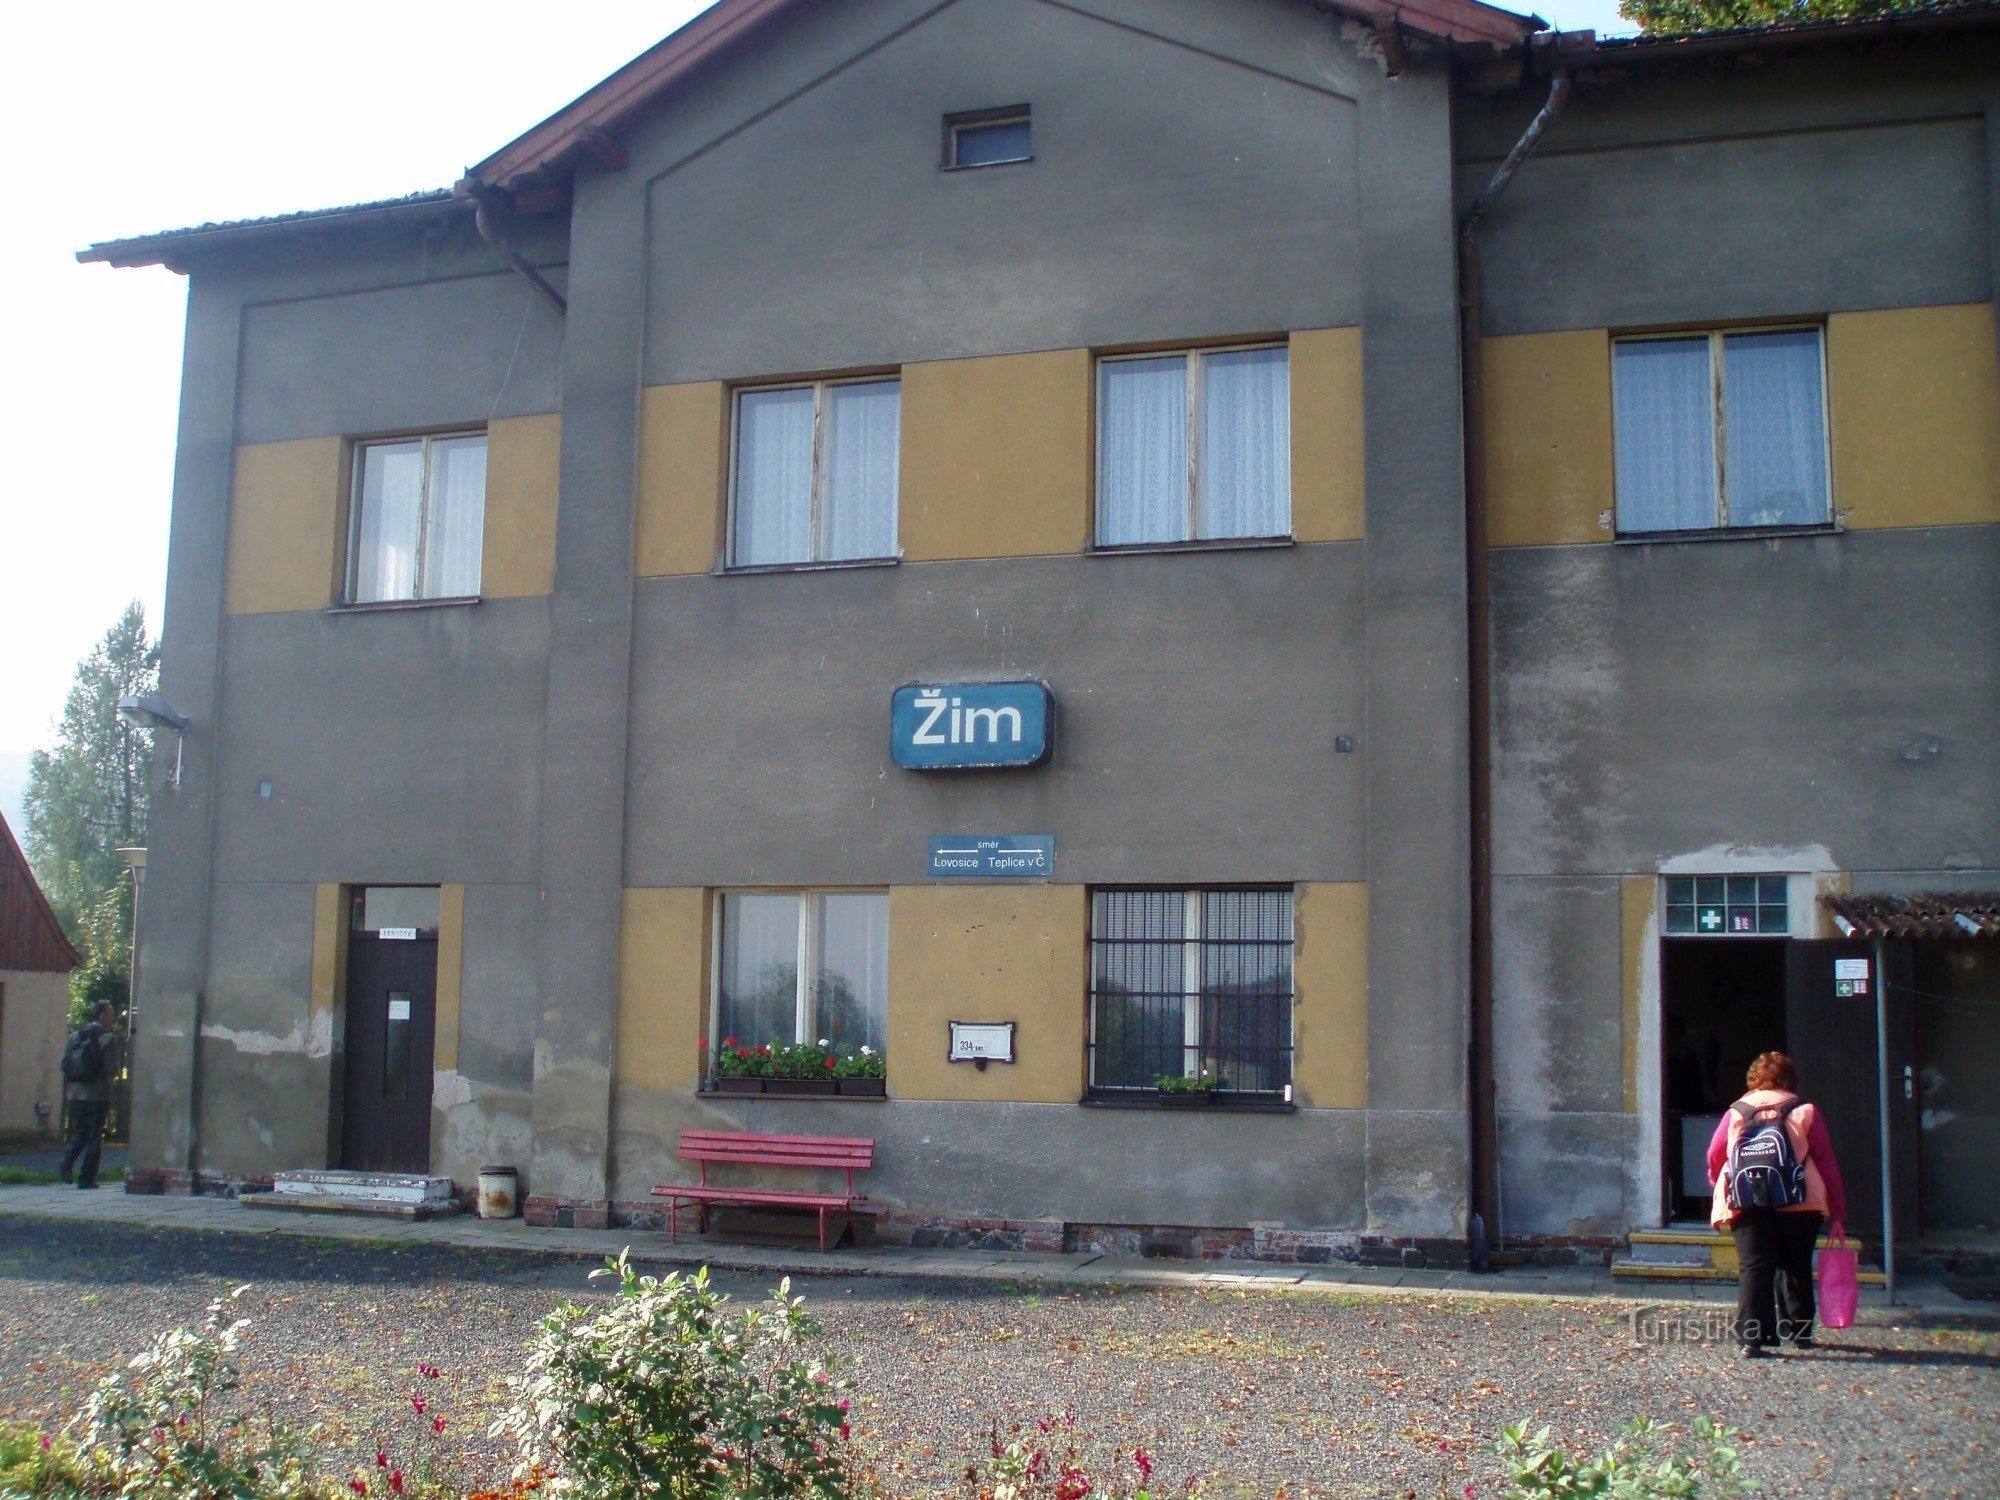 estação Žim